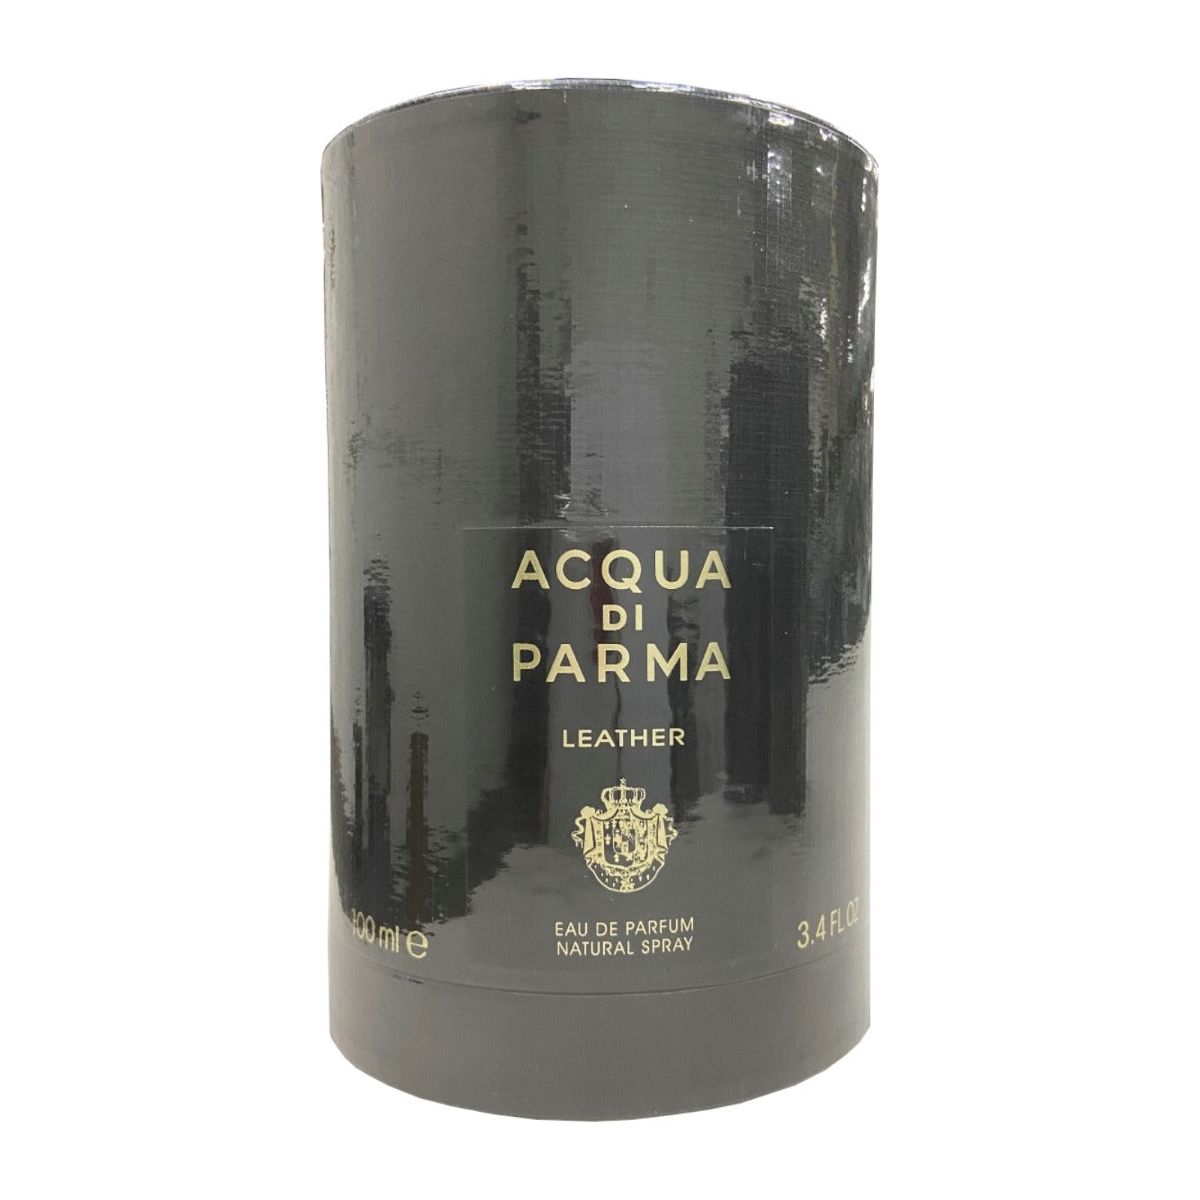 Acqua Di Parma Leather by Acqua Di Parma Eau De Parfum Spray 3.4